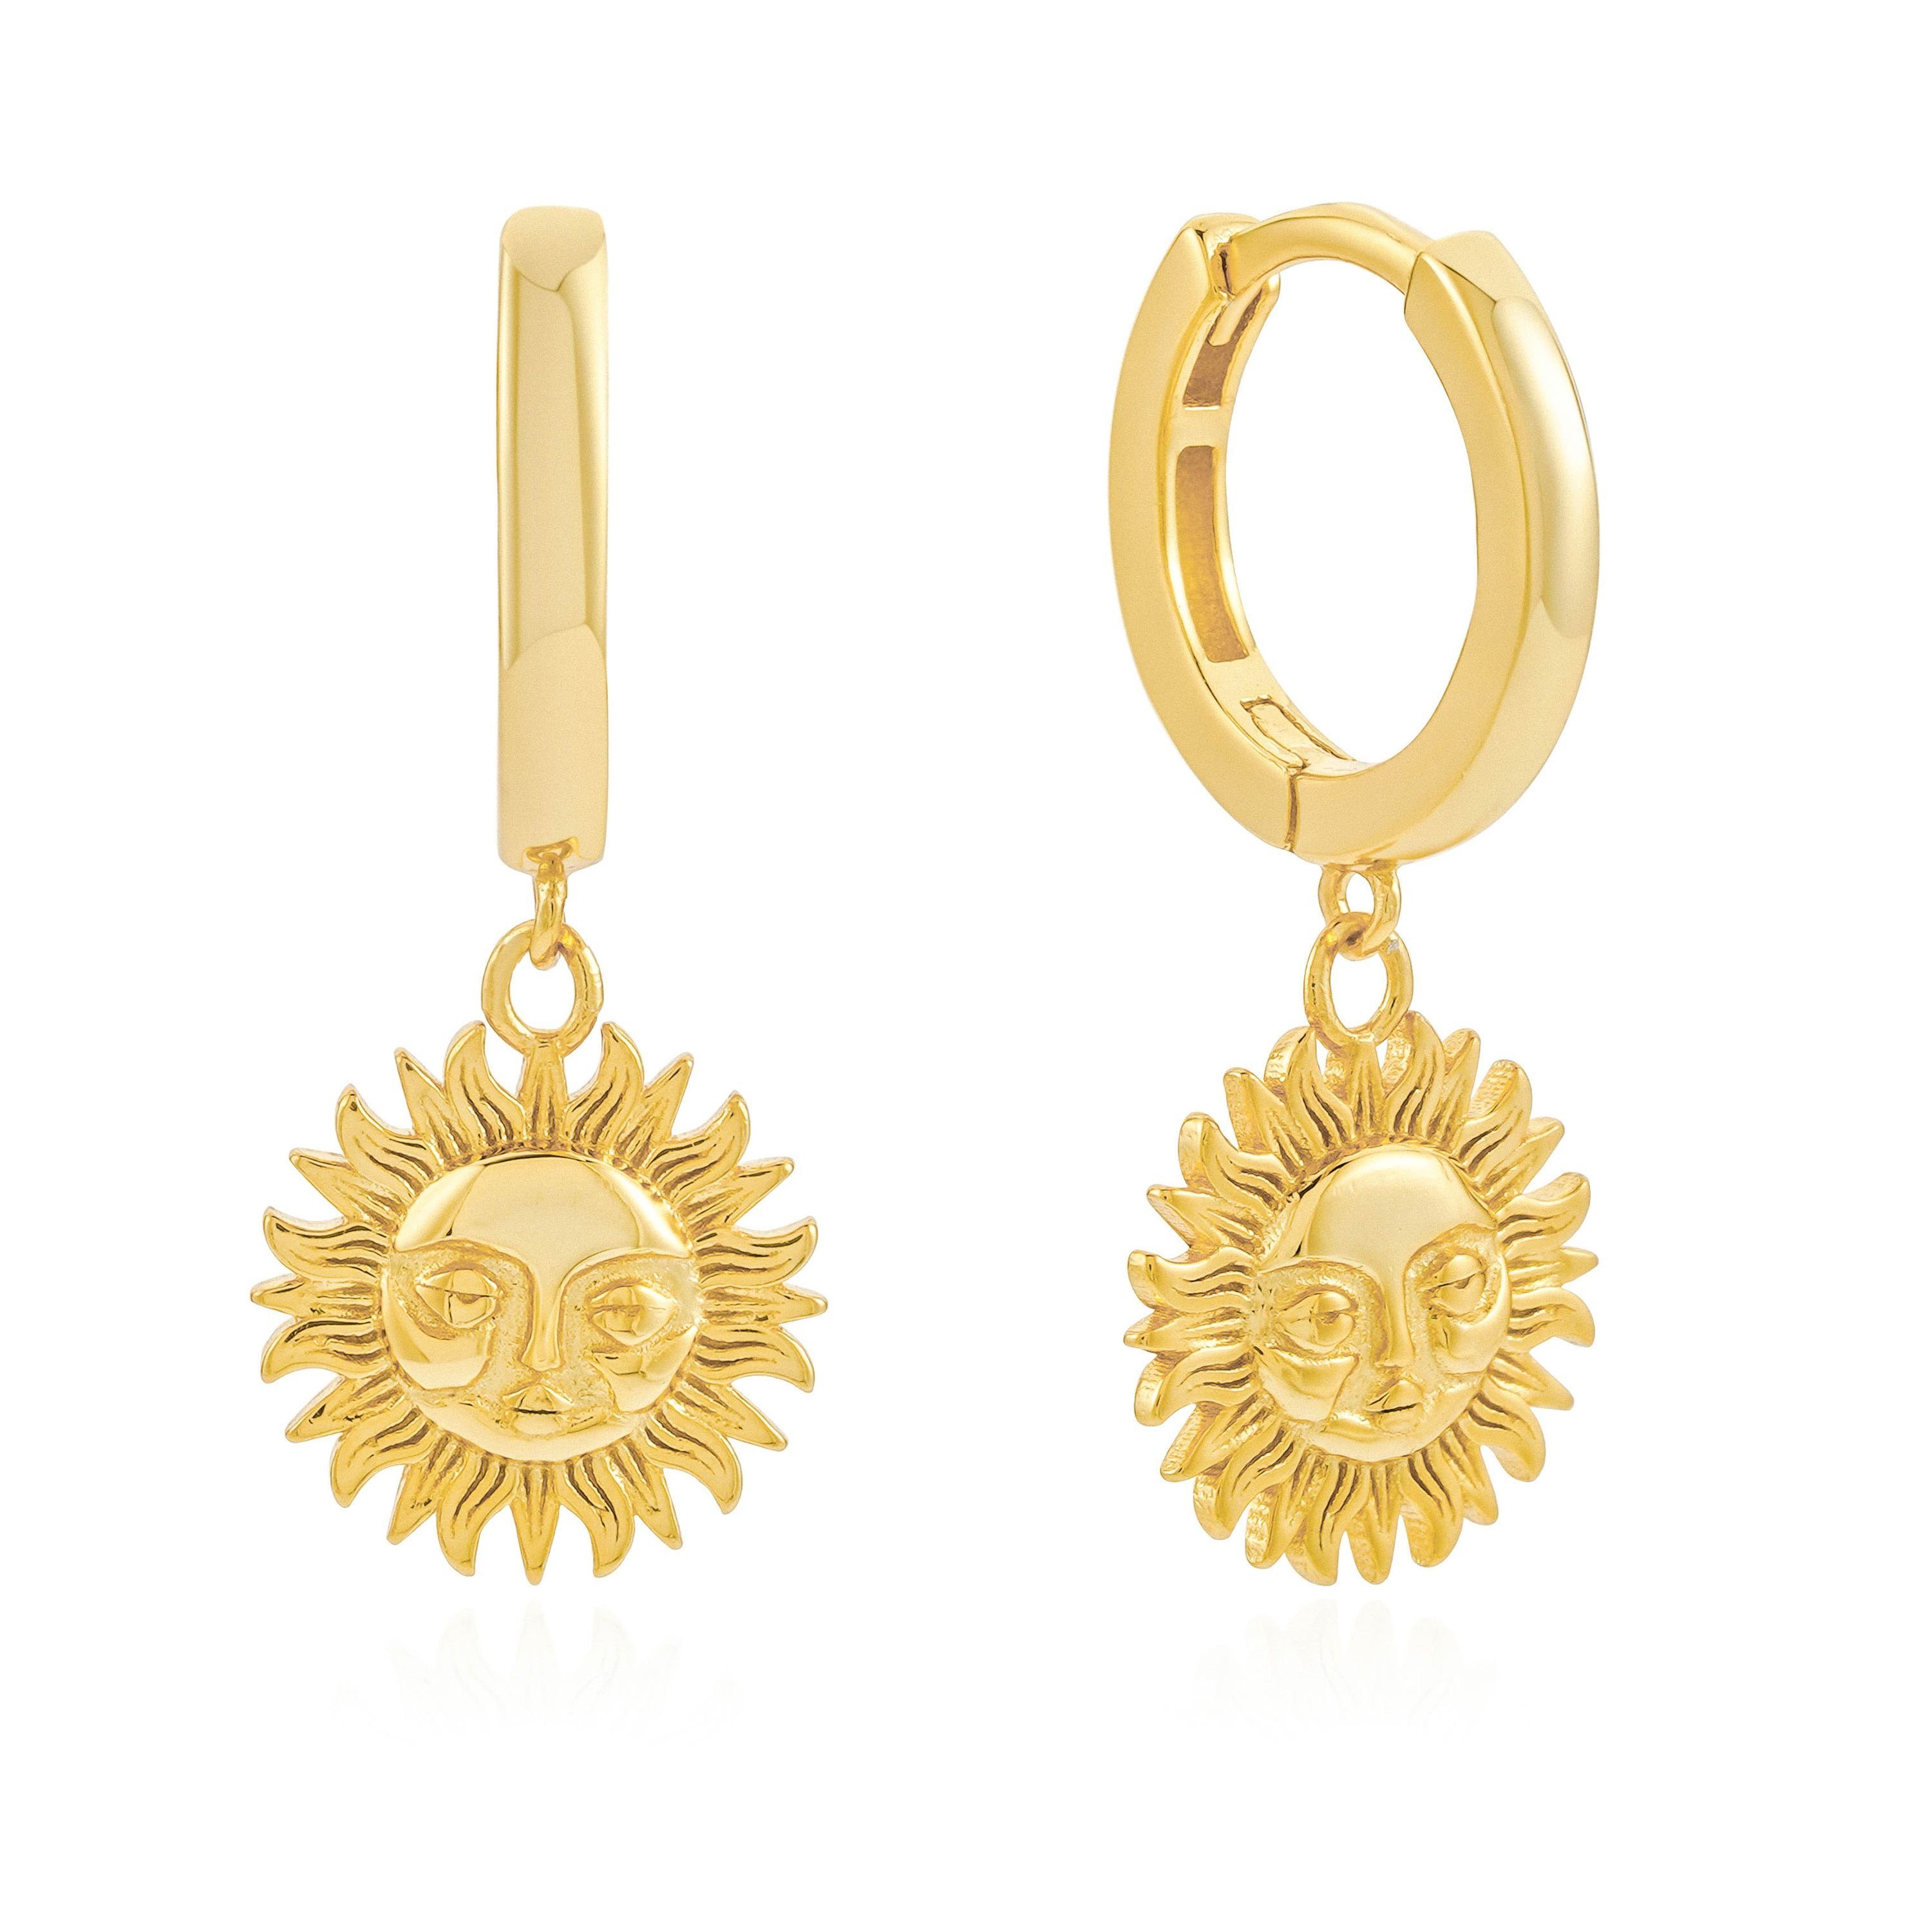 Brandlinger Paar Ohrhänger Ohrringe Salerno, Silber 925 vergoldet, Ohrringe mit Anhänger Sonne